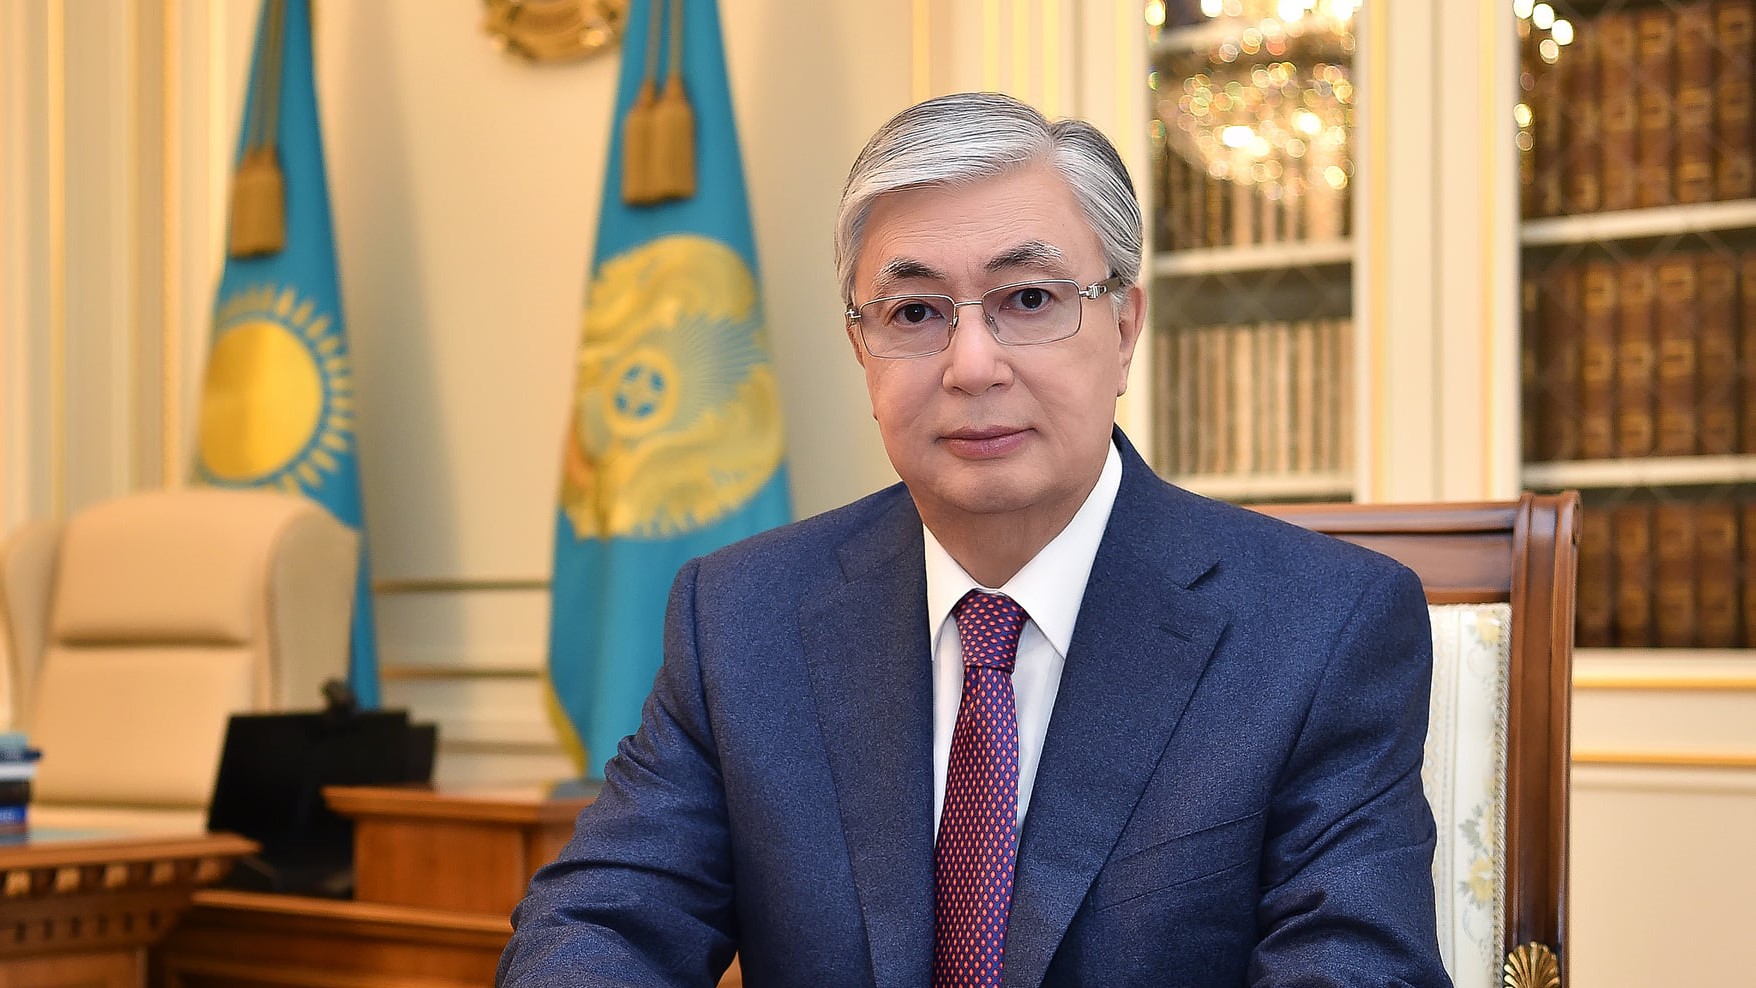 Биография президента Казахстана Токаева: детство, образование, политическая карьера